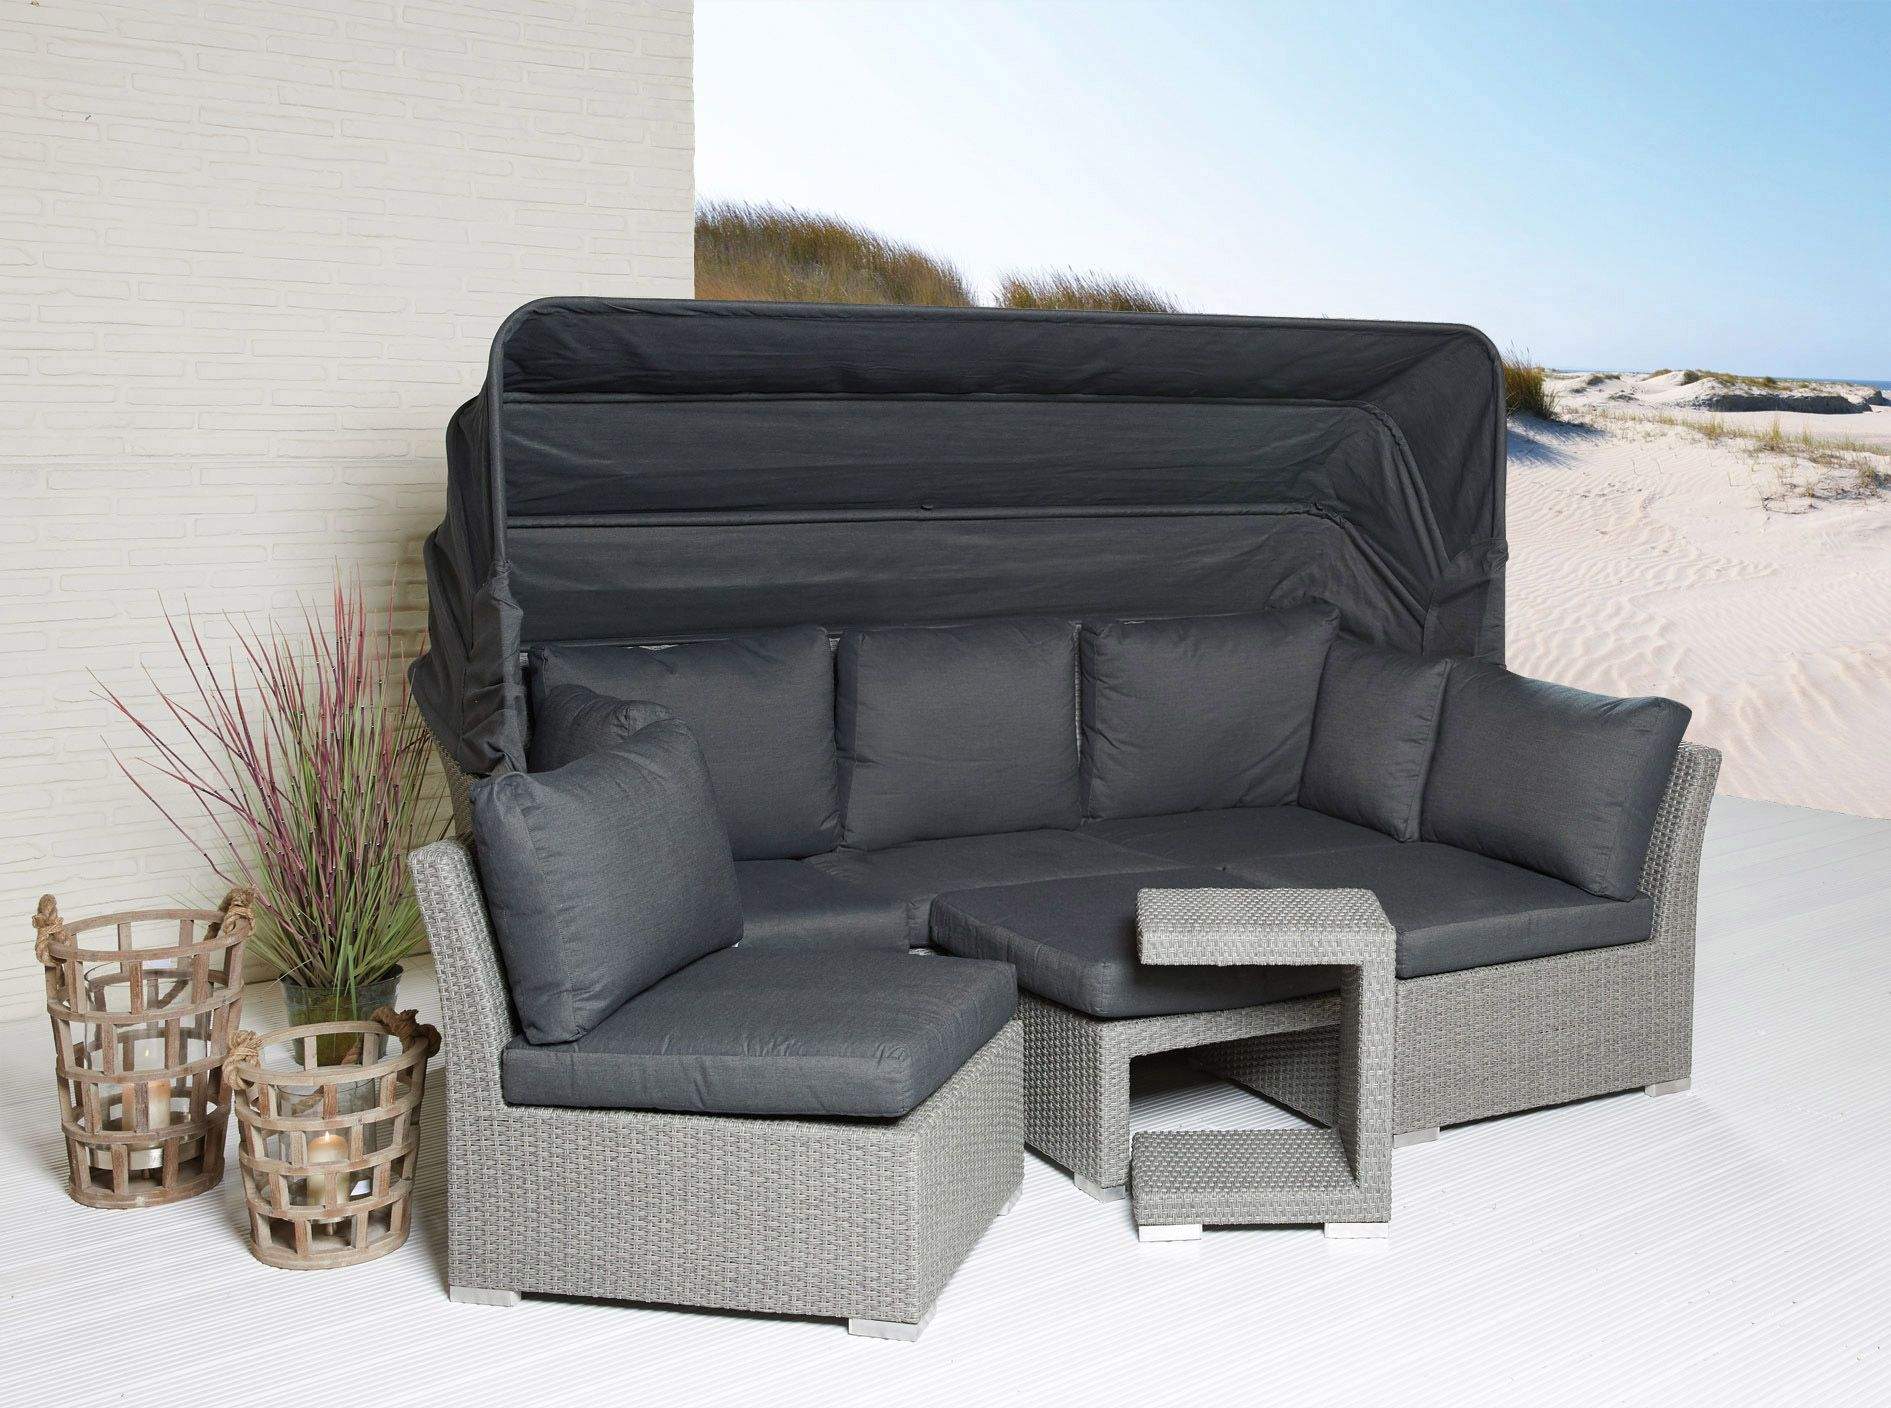 Lounge sofa Garten Das Beste Von sonneninsel Set 5 Teilig Modesto sonneninsel Strandkorb